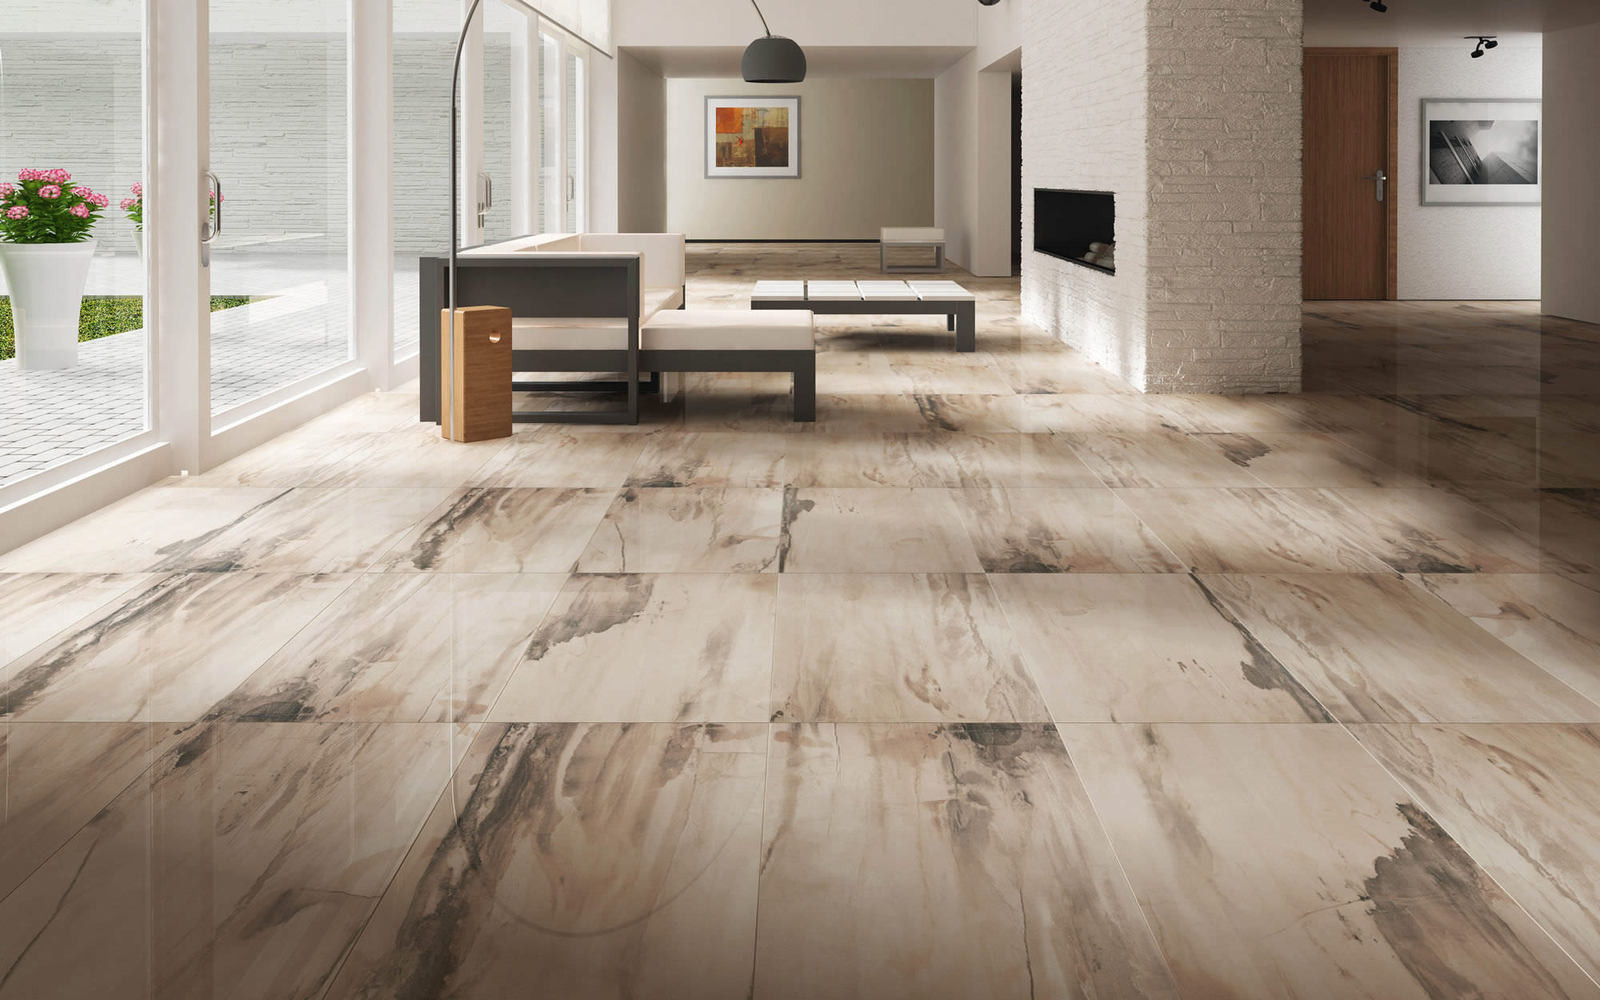 Living Room Flooring Ideas Inspirational 25 Beautiful Tile Flooring Ideas for Living Room Kitchen